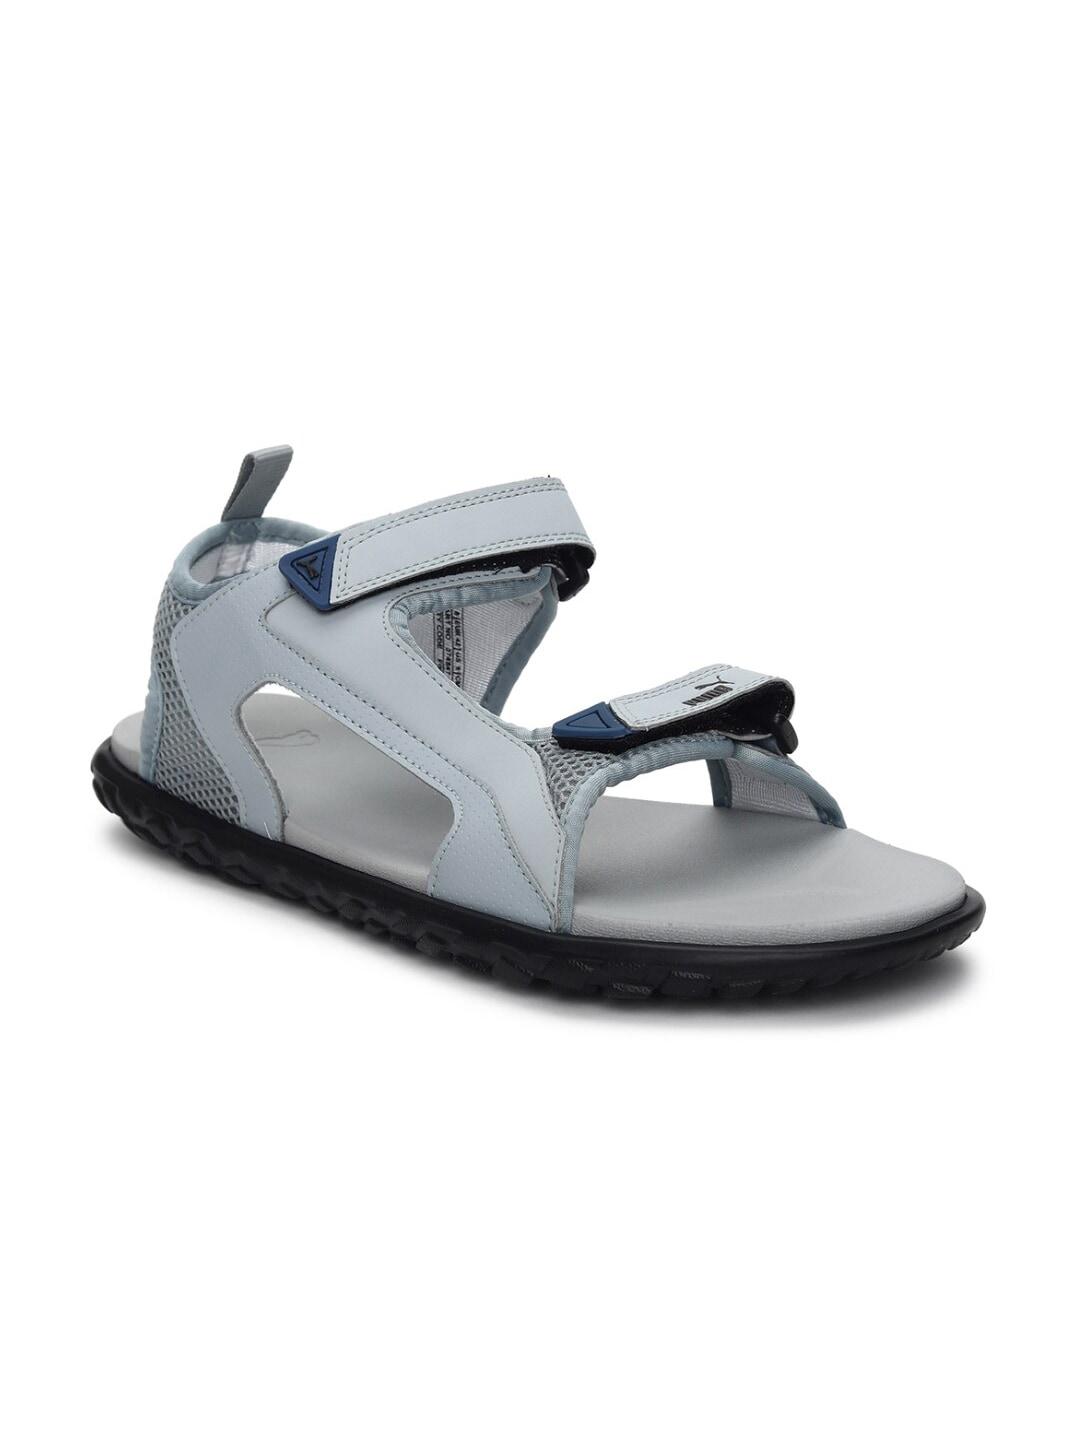 Puma Unisex Grey Comfort Sandals